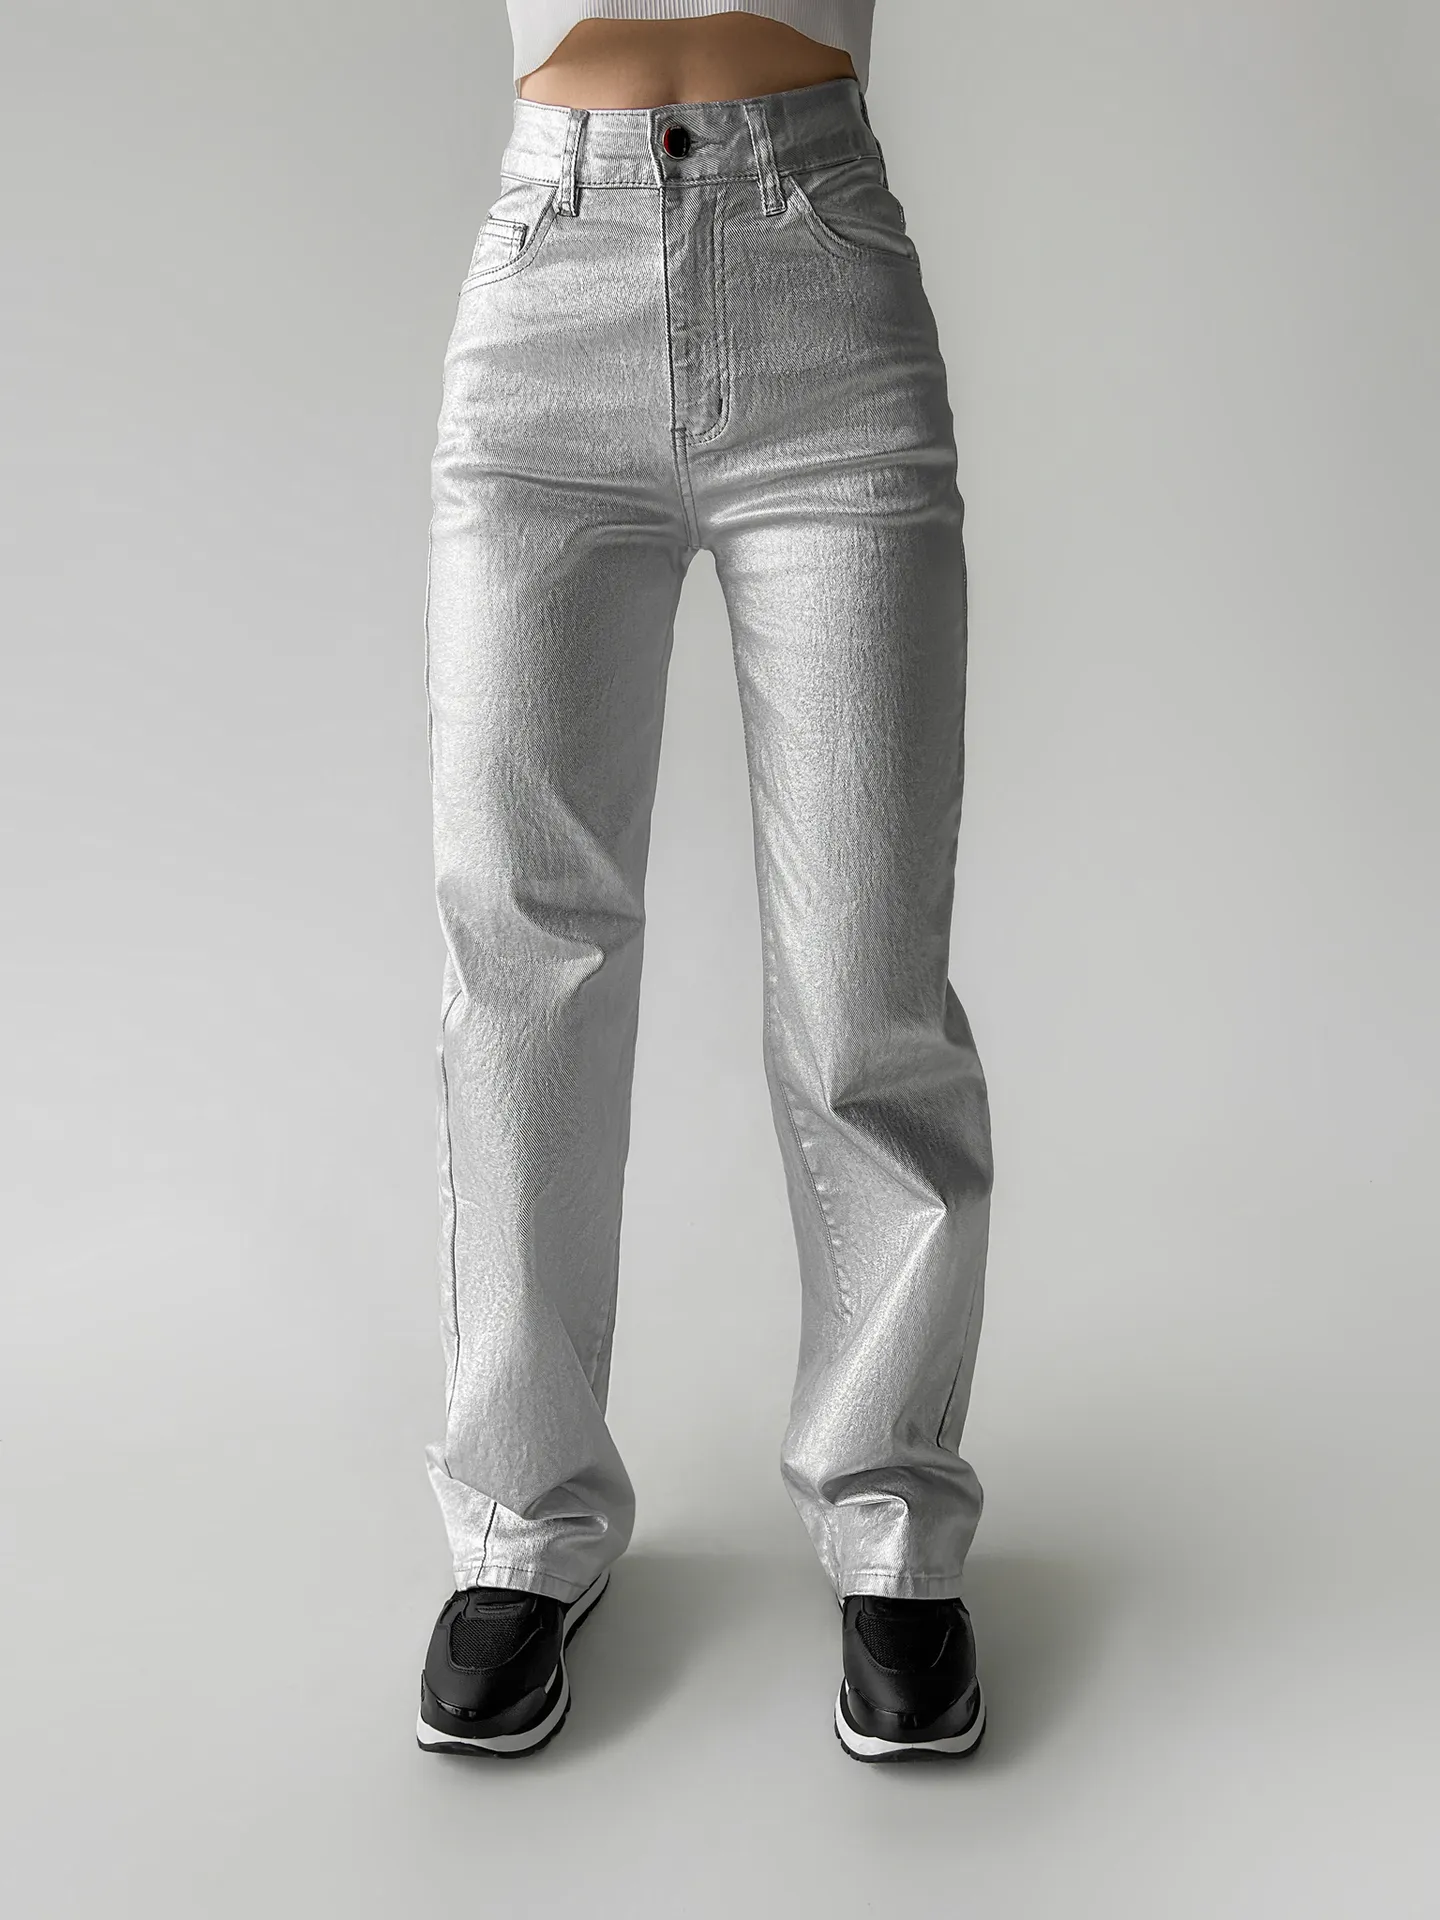 Штаны Fashion Jeans 692 широкие однотонные с напылением